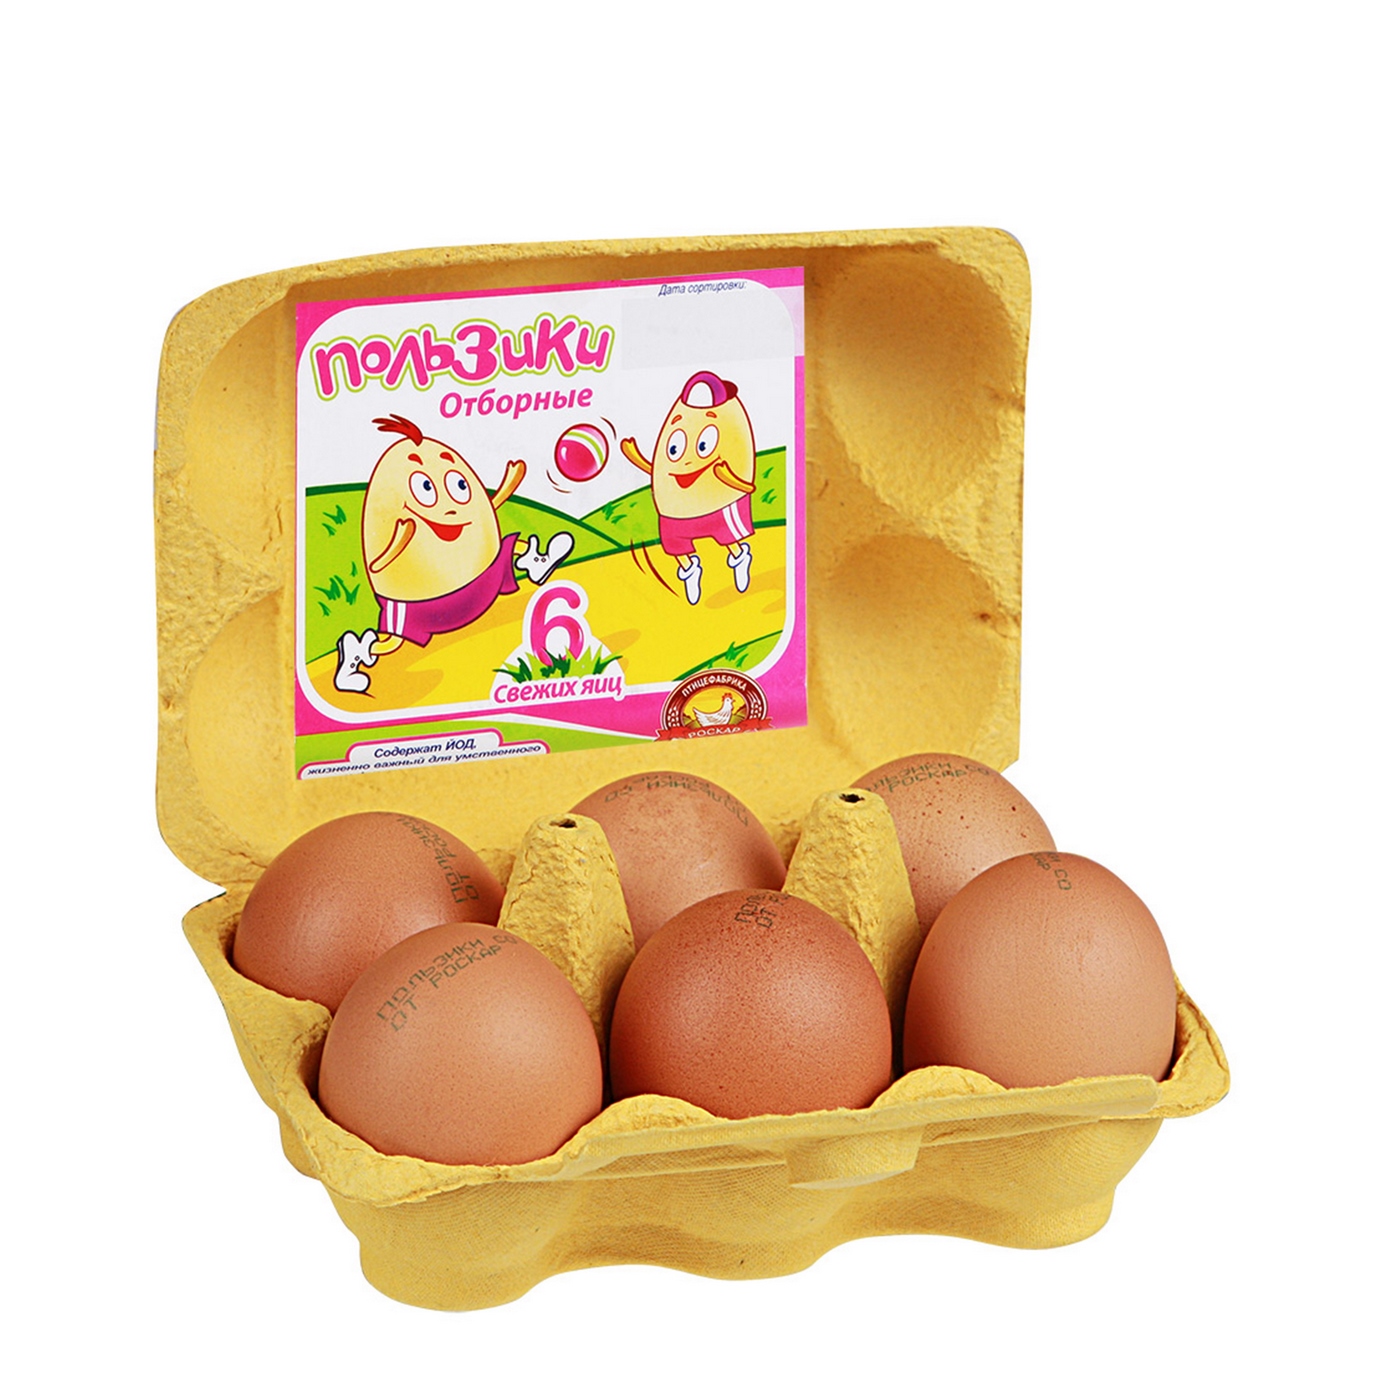 Яйца купить нижний новгород. Яйца пользики. Пользики яйцо куриное с1 10шт. Упаковка для яиц. Яйца куриные в упаковке.